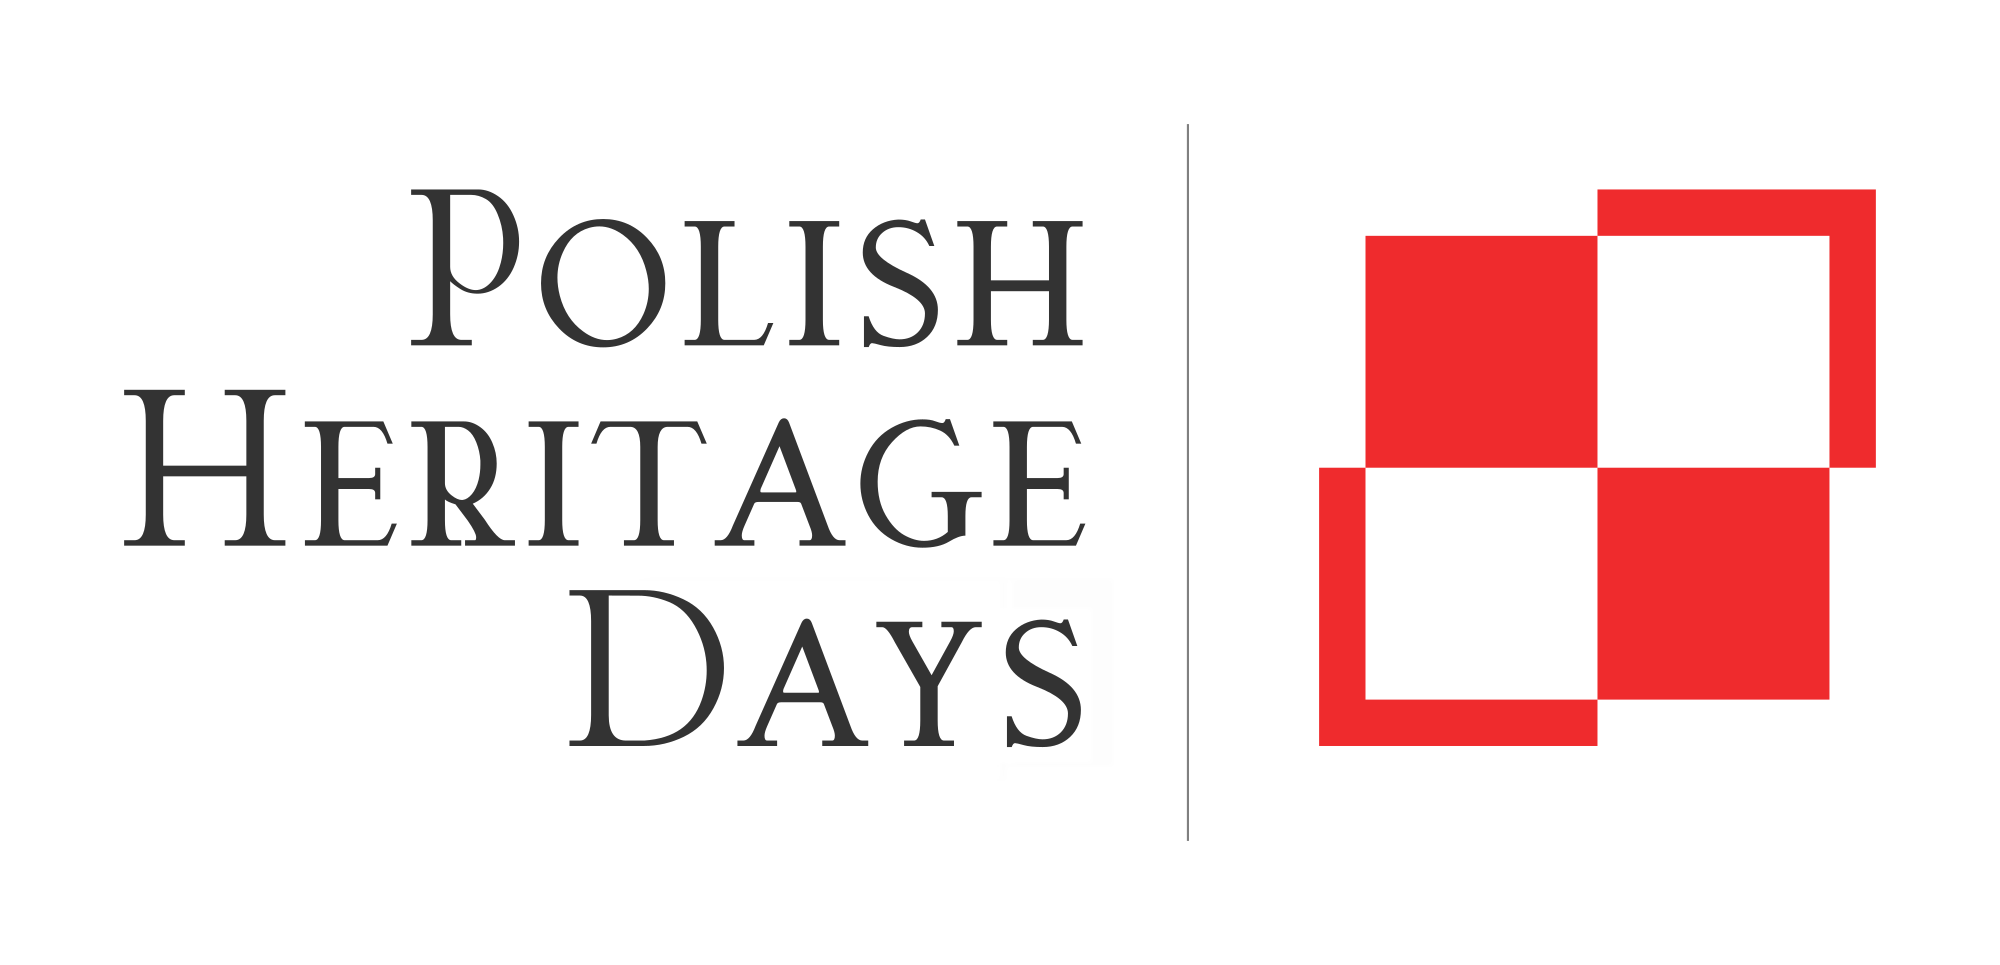 Zał. 2. Logo Polish Heritage Days